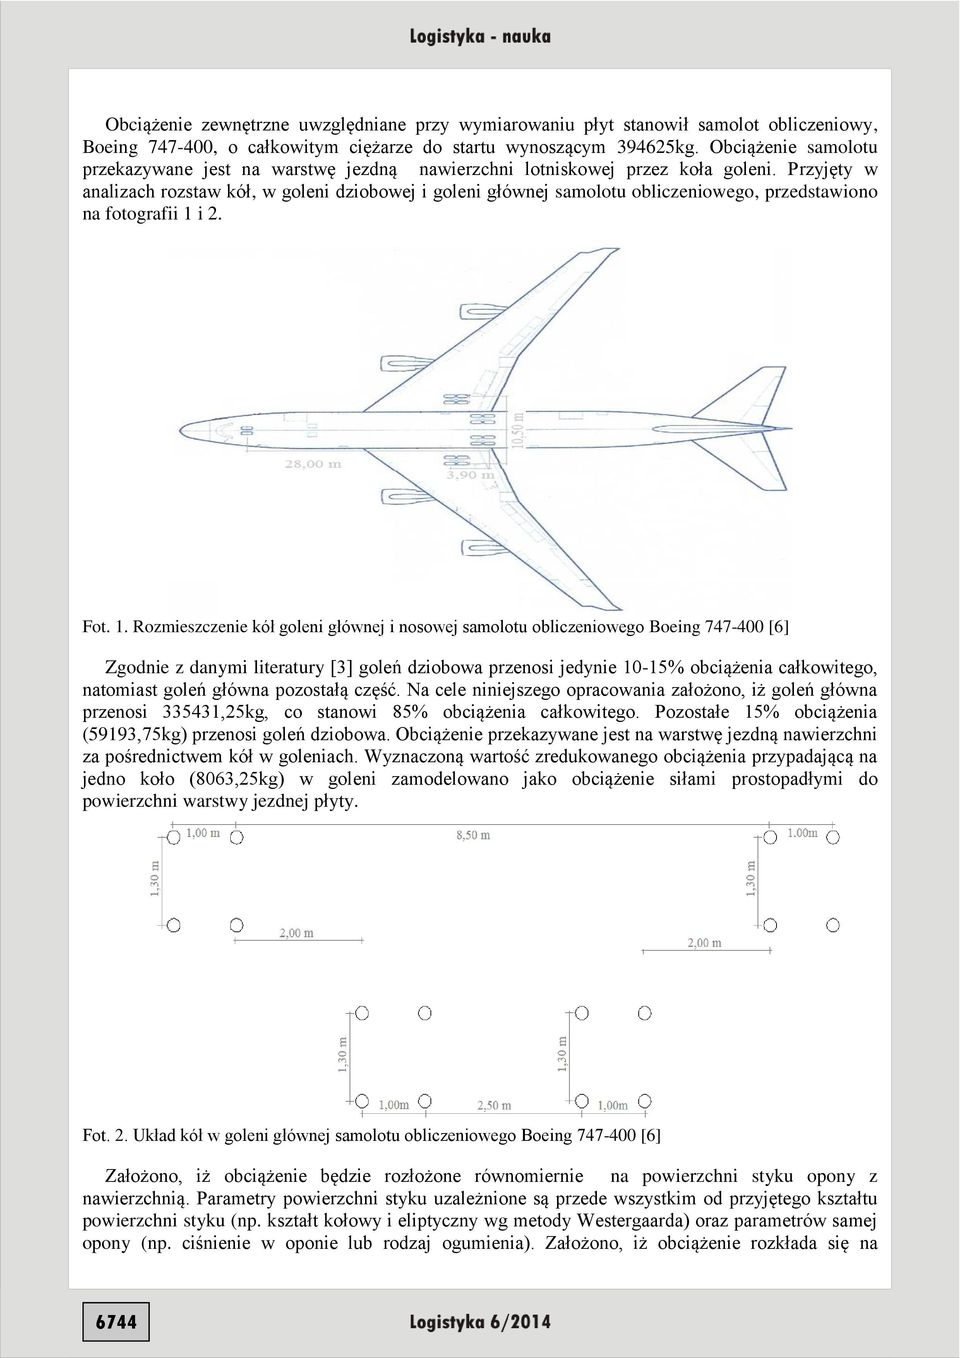 Przyjęty w analizach rozstaw kół, w goleni dziobowej i goleni głównej samolotu obliczeniowego, przedstawiono na fotografii 1 